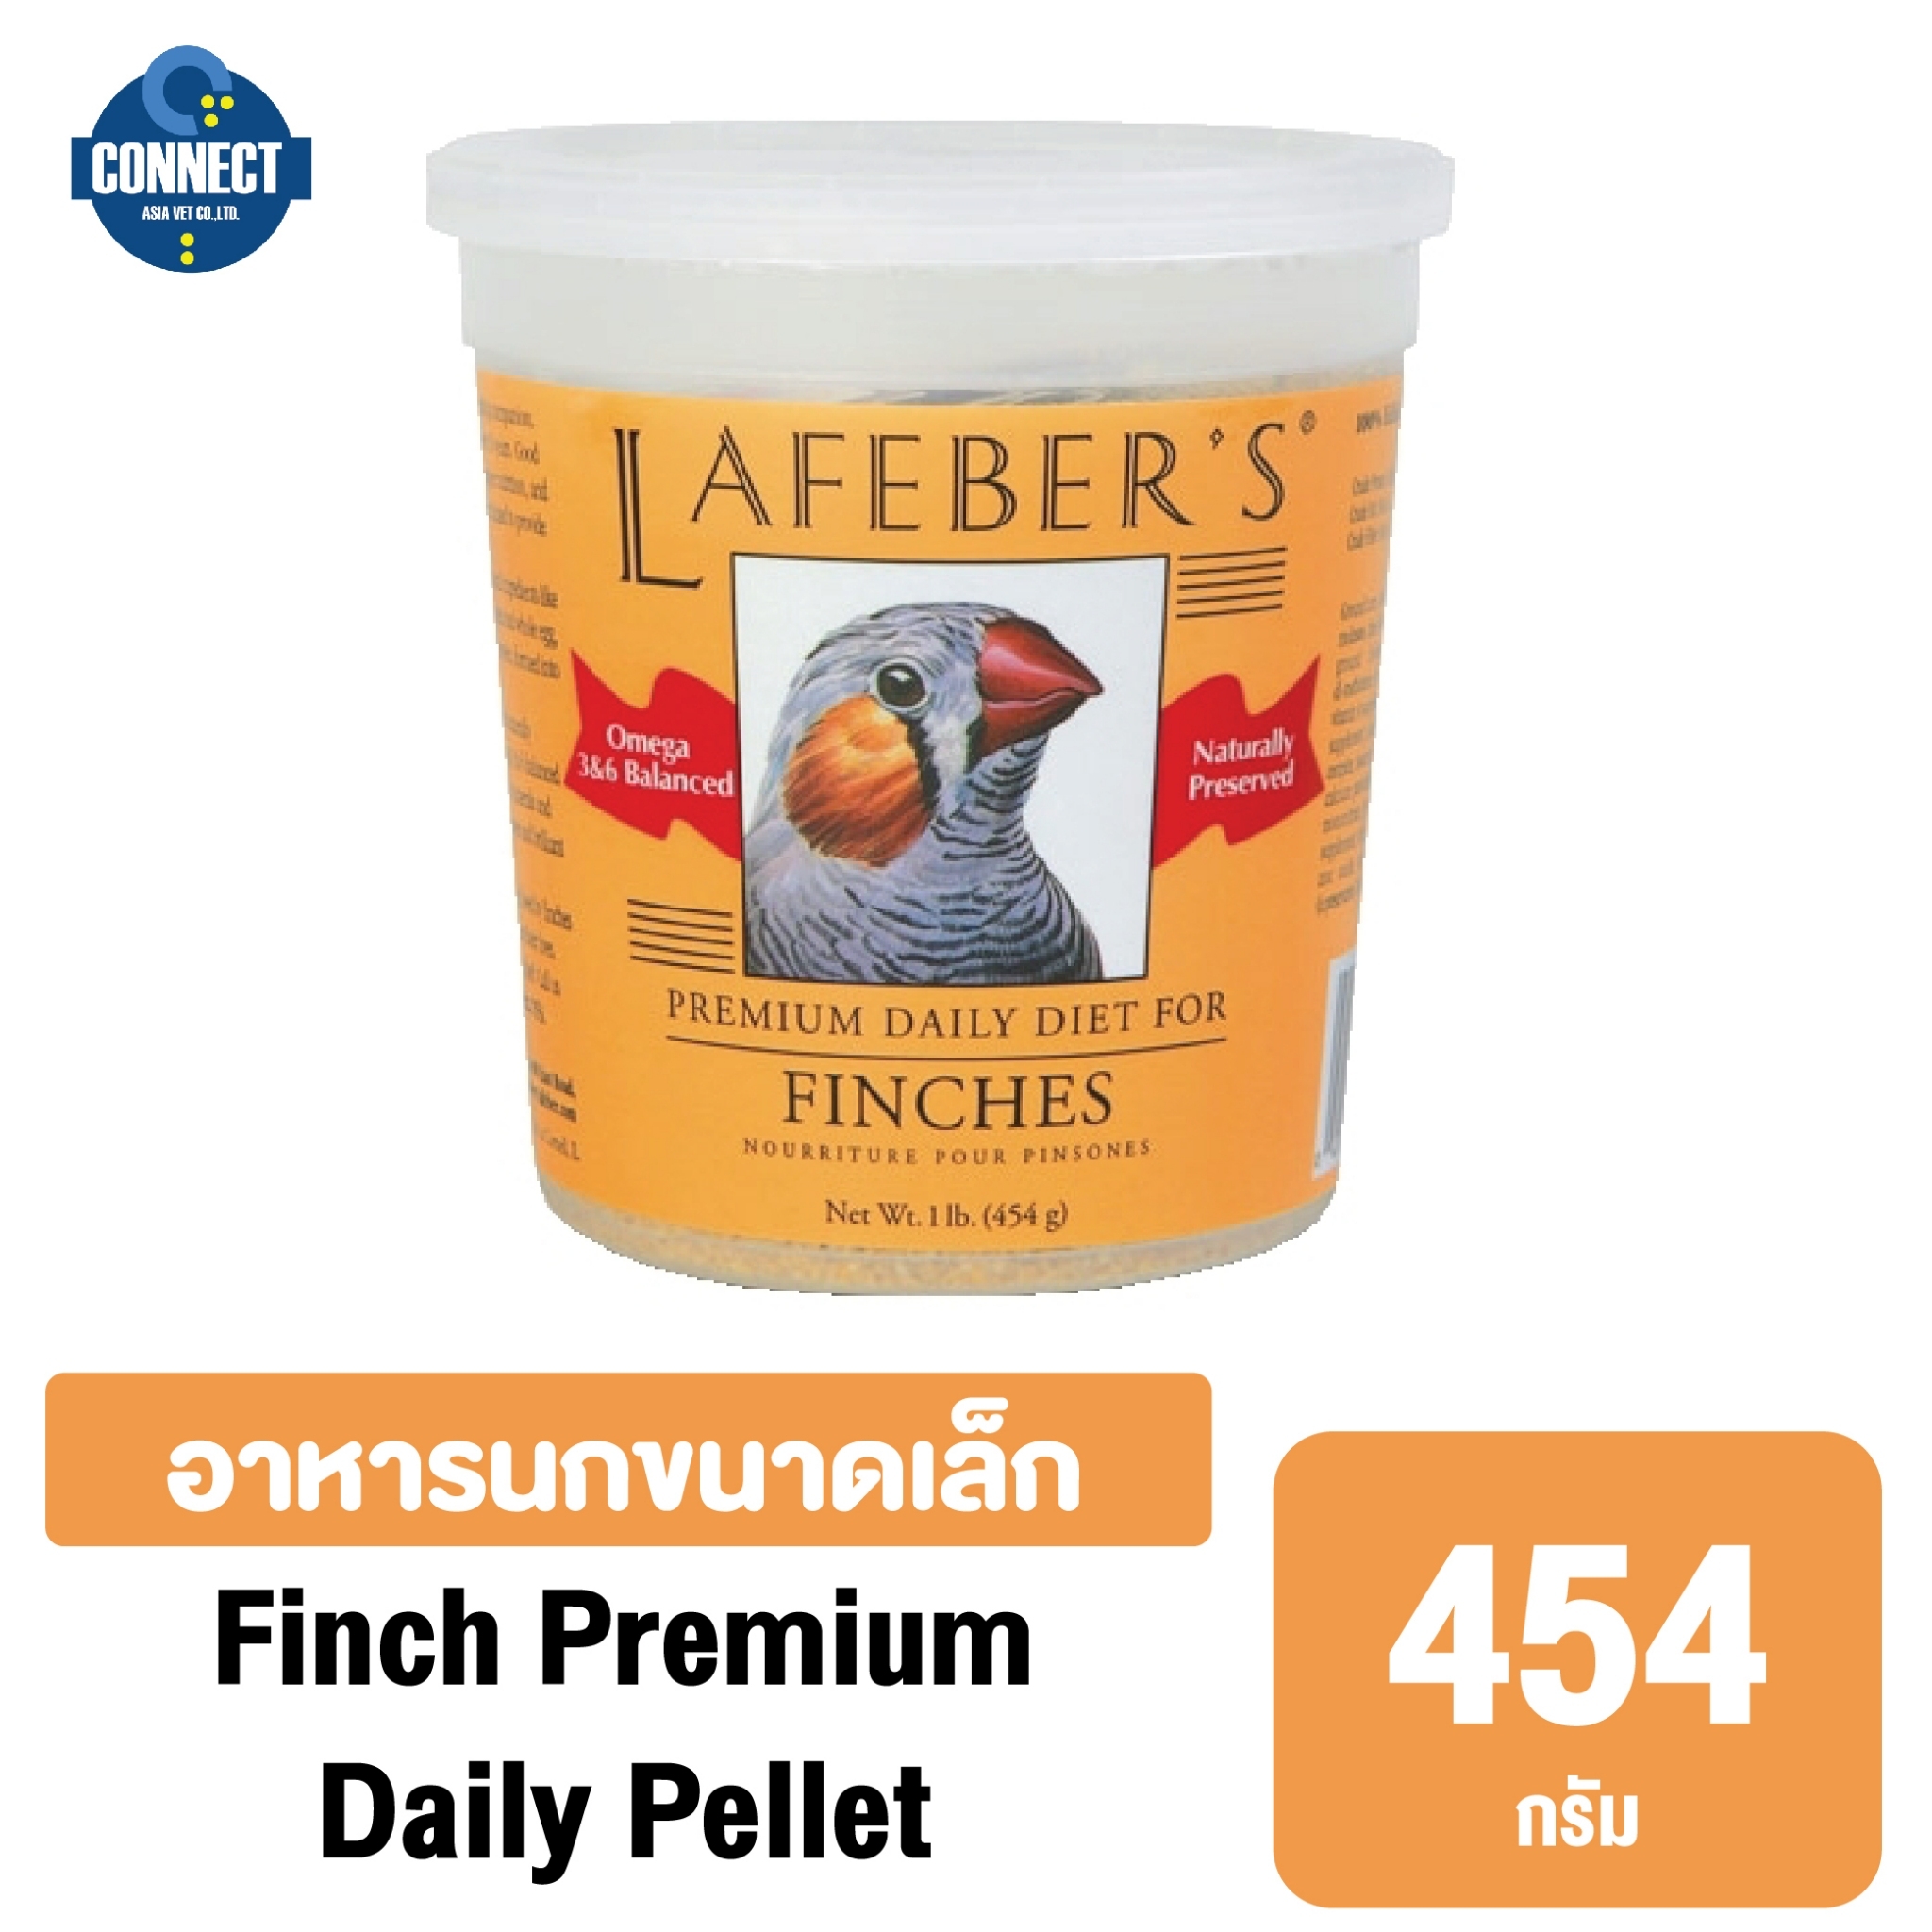 Lafeber-อาหารนก ฟินช์ แกรนูล ขนาด 454 กรัม.